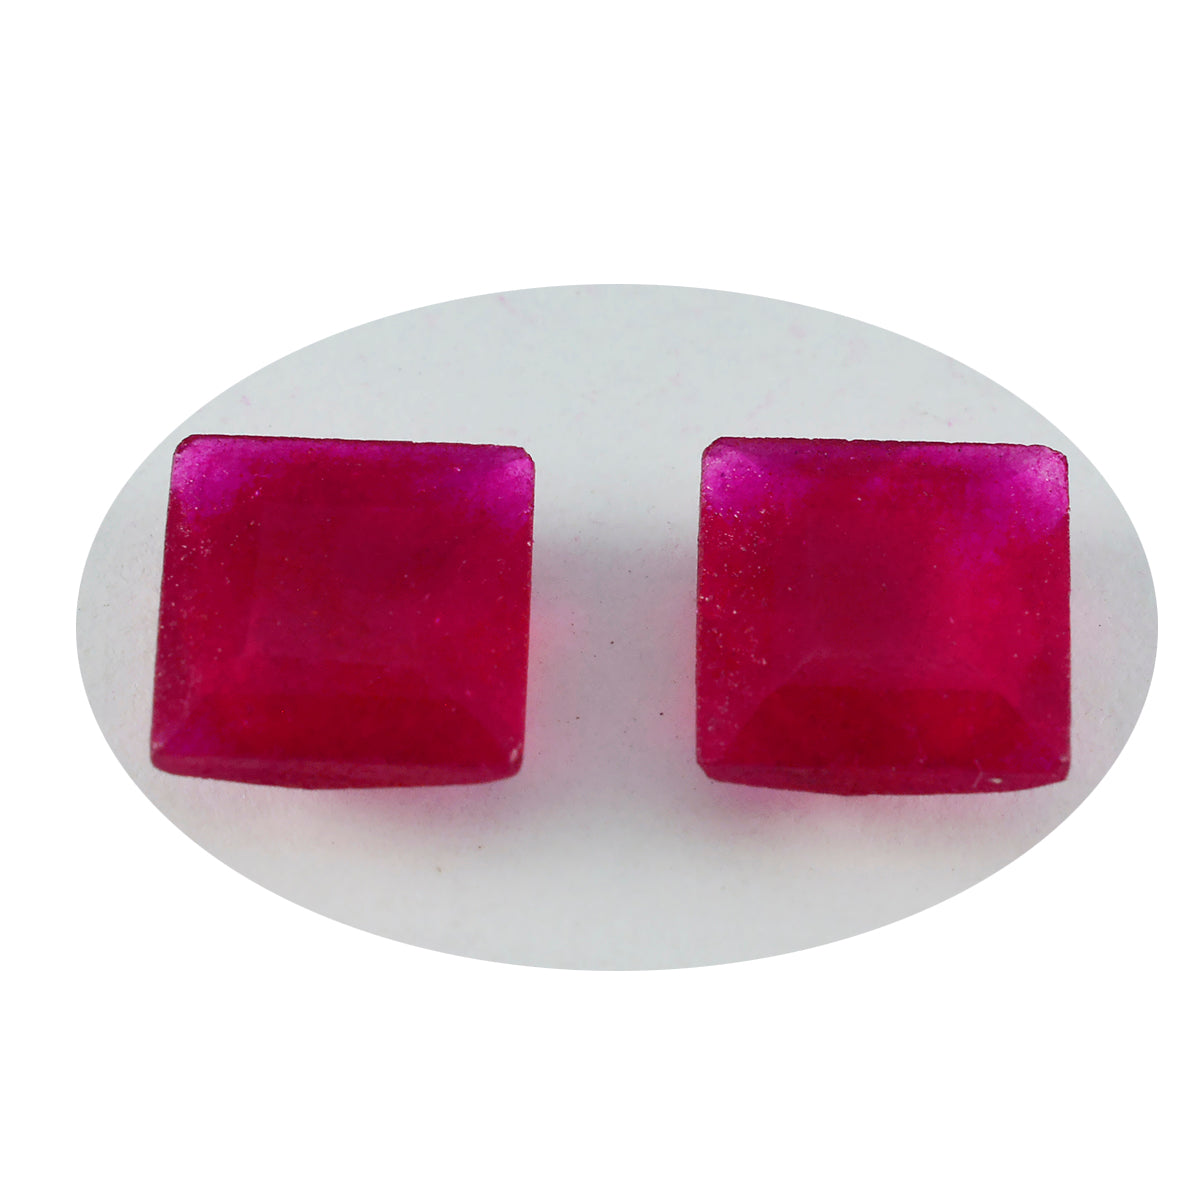 riyogems 1pc véritable jaspe rouge à facettes 13x13 mm forme carrée belle pierre précieuse de qualité